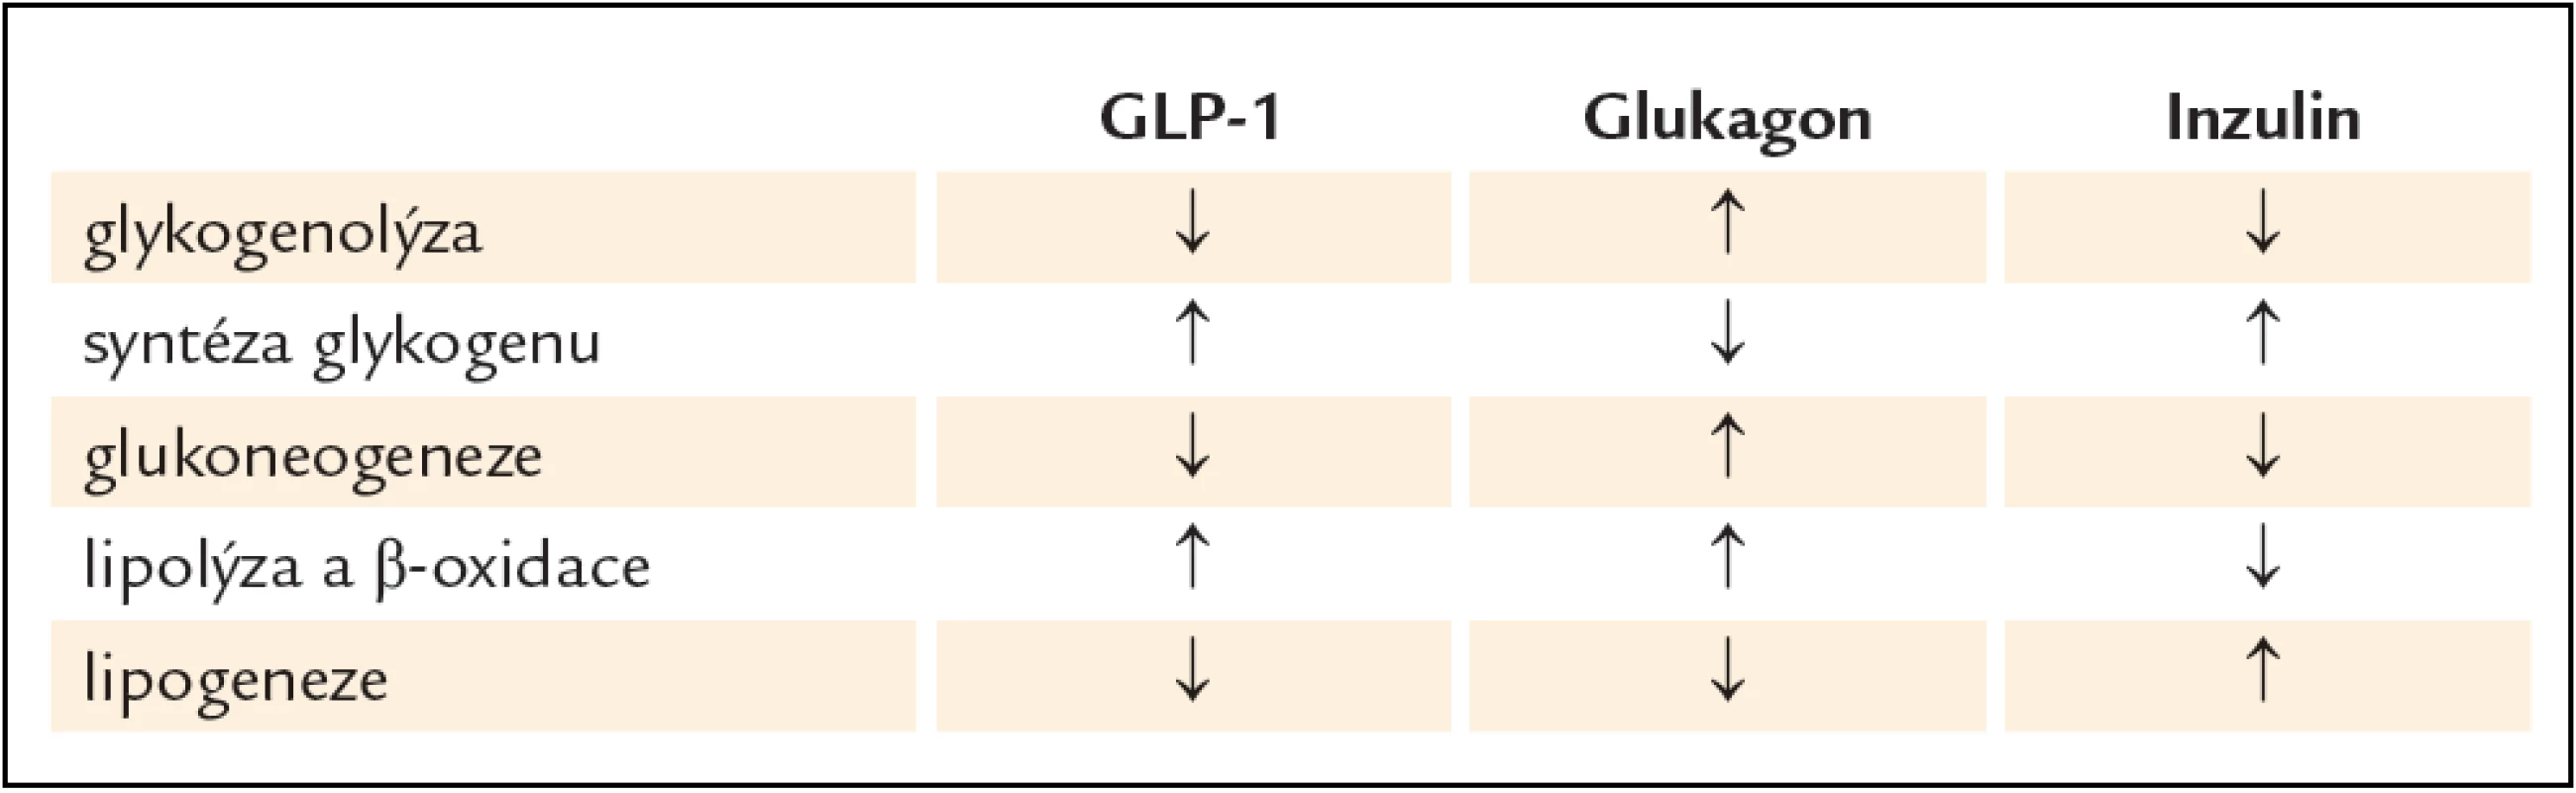 Porovnání účinku GLP-1 (a jeho štěpných produktů), glukagonu a inzulinu na jaterní metabolizmus sacharidů a lipidů.